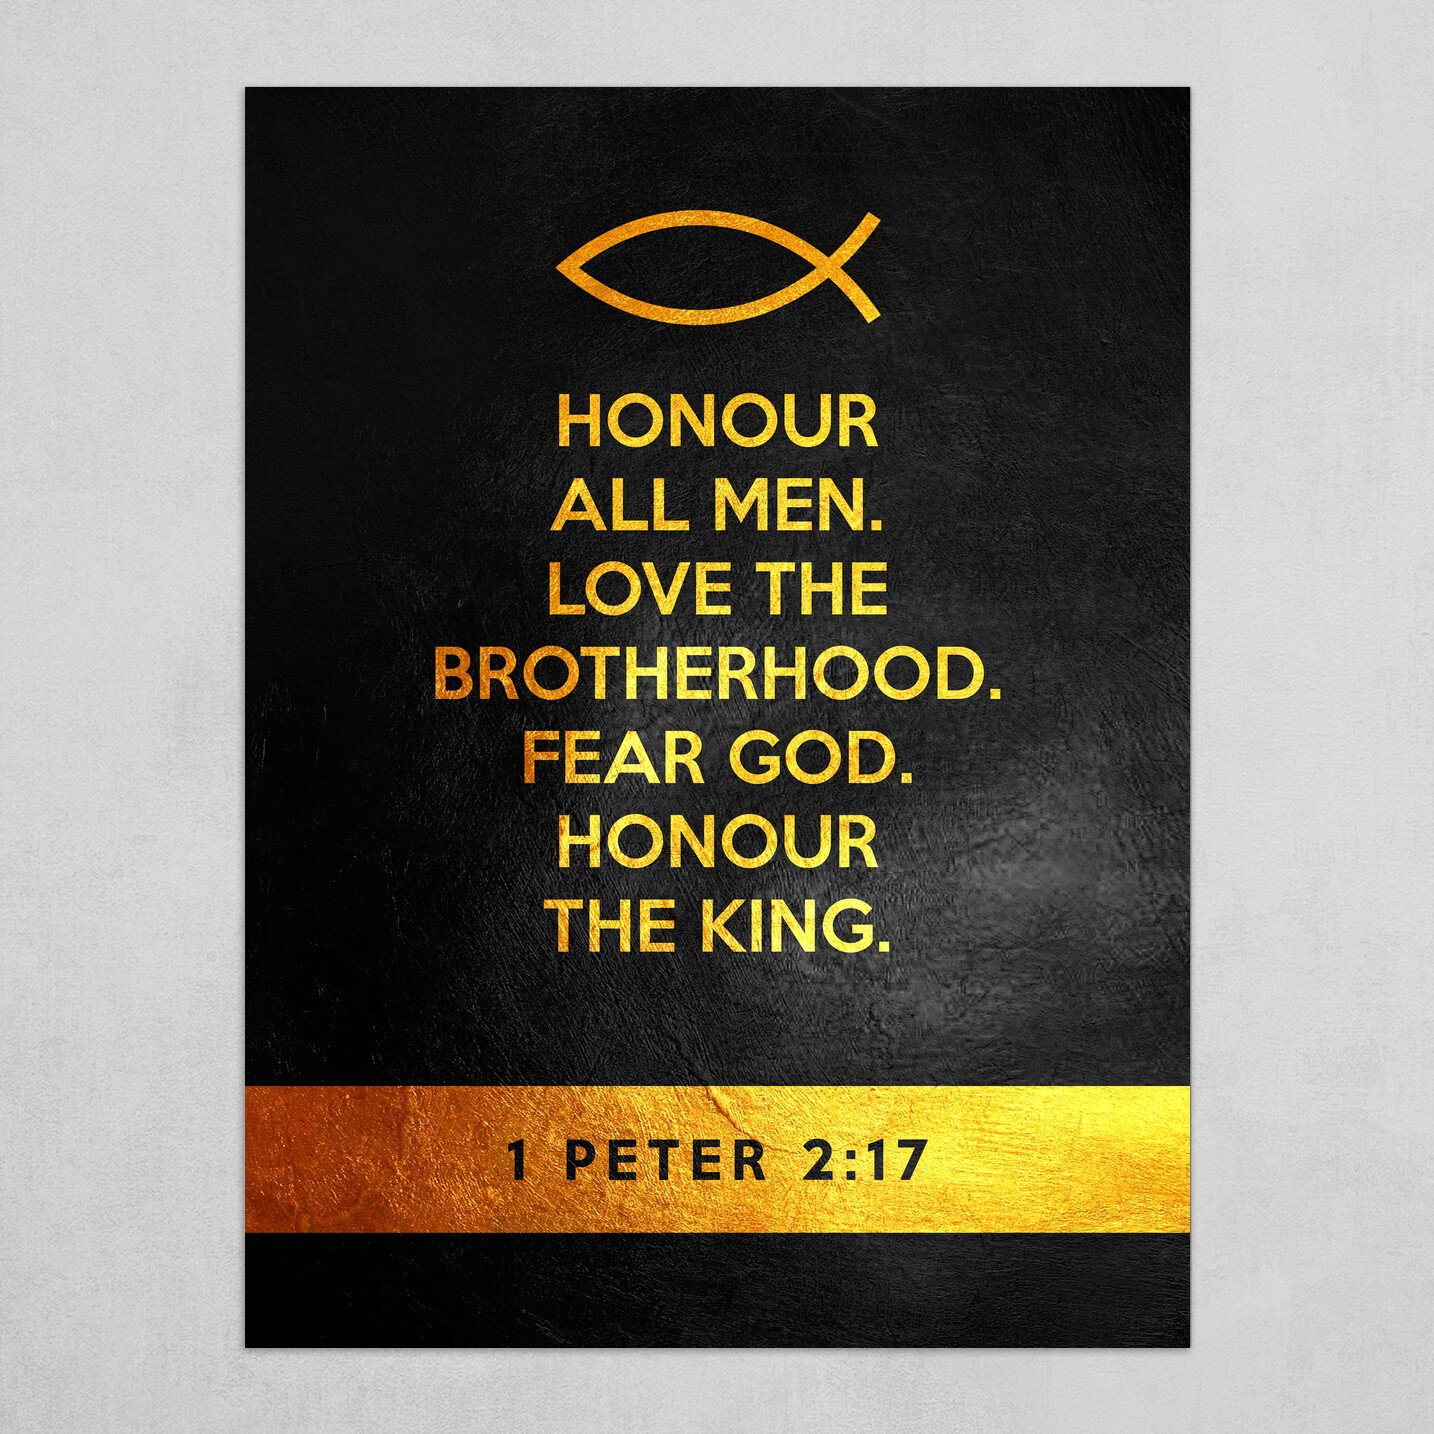 1 Peter 2:17 Bible Verse Text Art